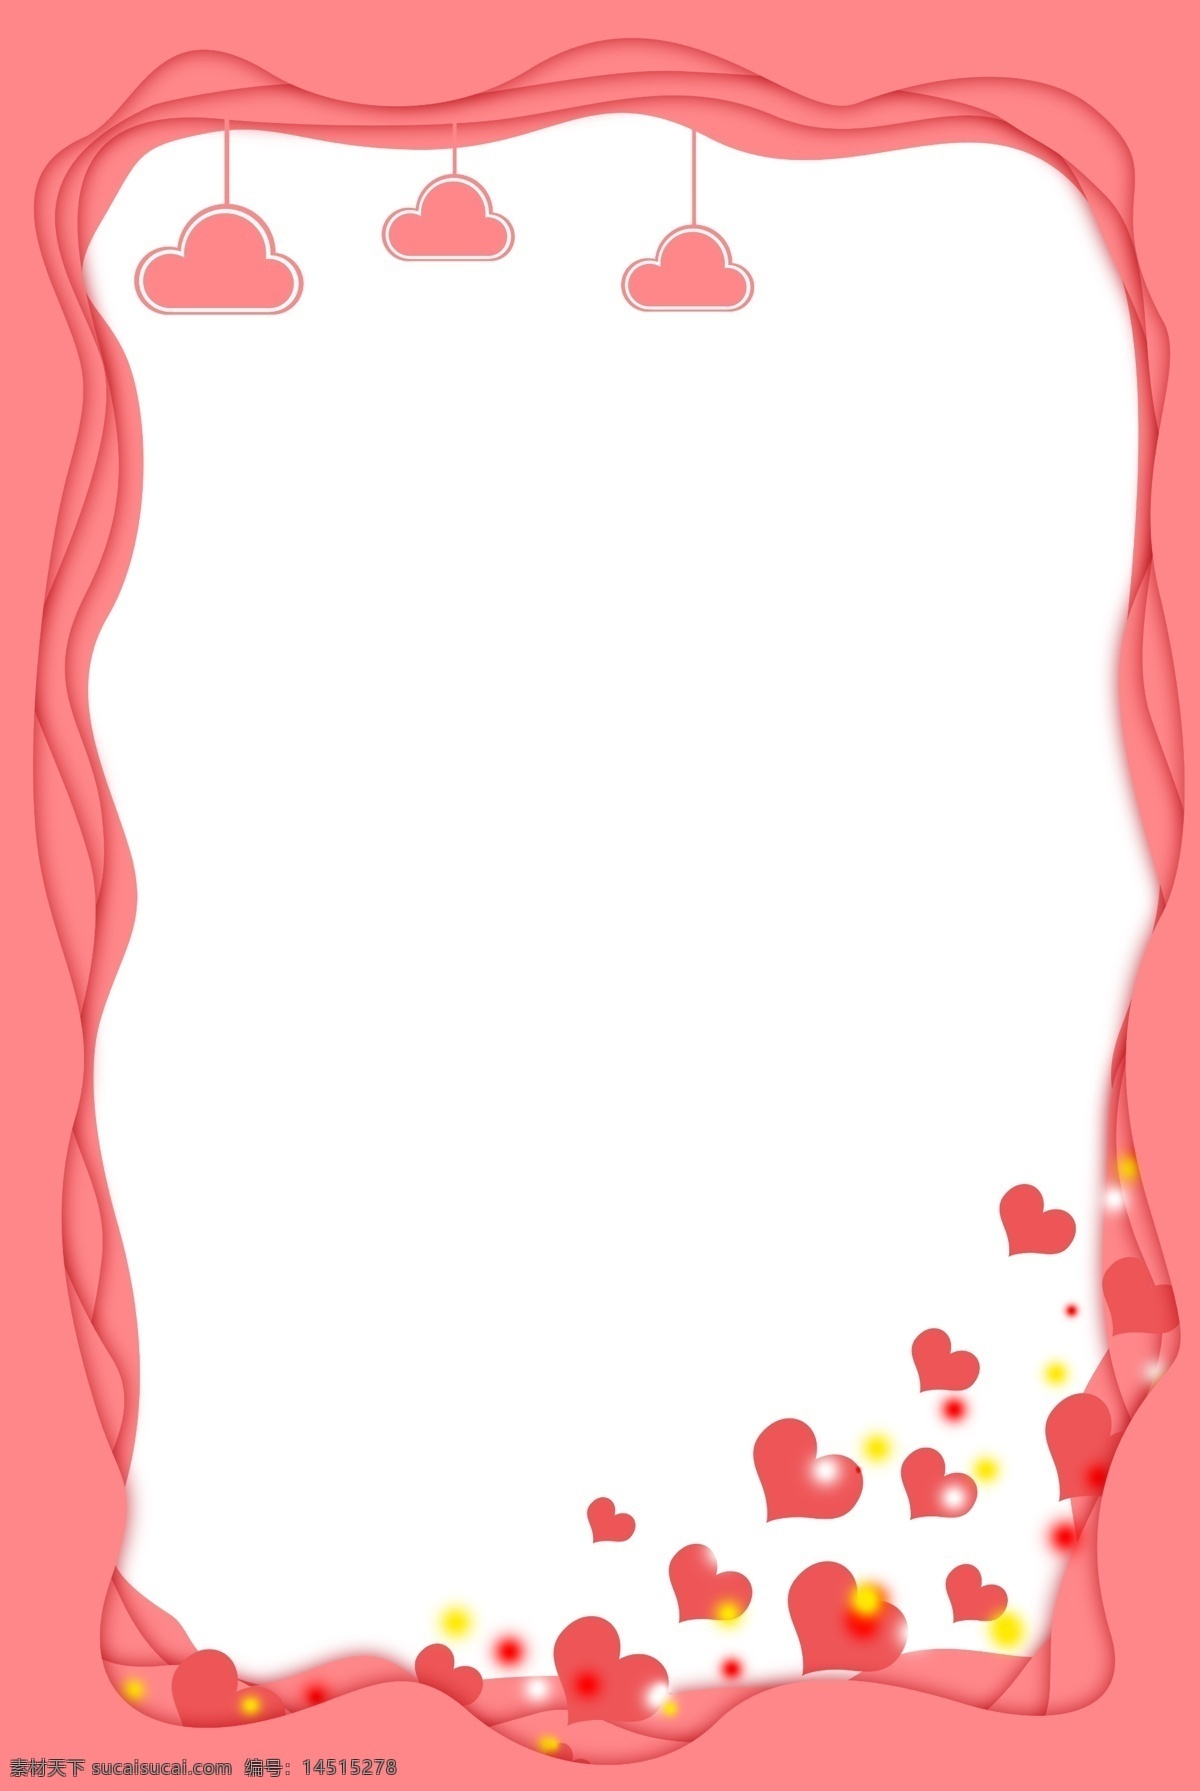 粉色 剪纸 风 海报 边框 心 云 情人节 爱心 爱 爱情 粉色边框 剪纸边框 剪纸风 光 粉嫩 甜蜜 海报边框